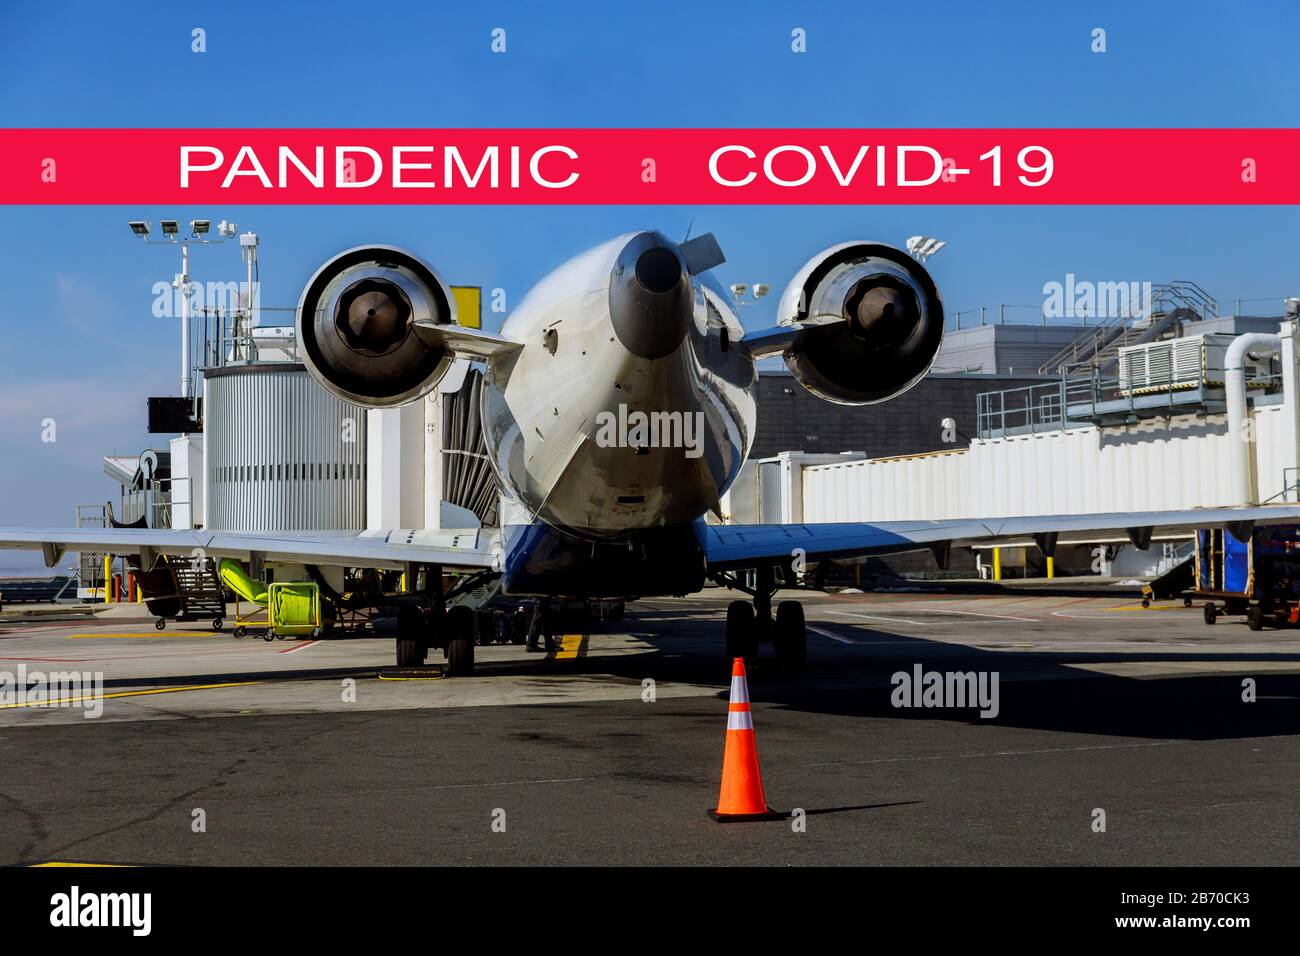 Globale Pandemie mit Coronavirus COVID-19-Flugzeug sitzt während an einem Tor am Internationalen Flughafen Stockfoto